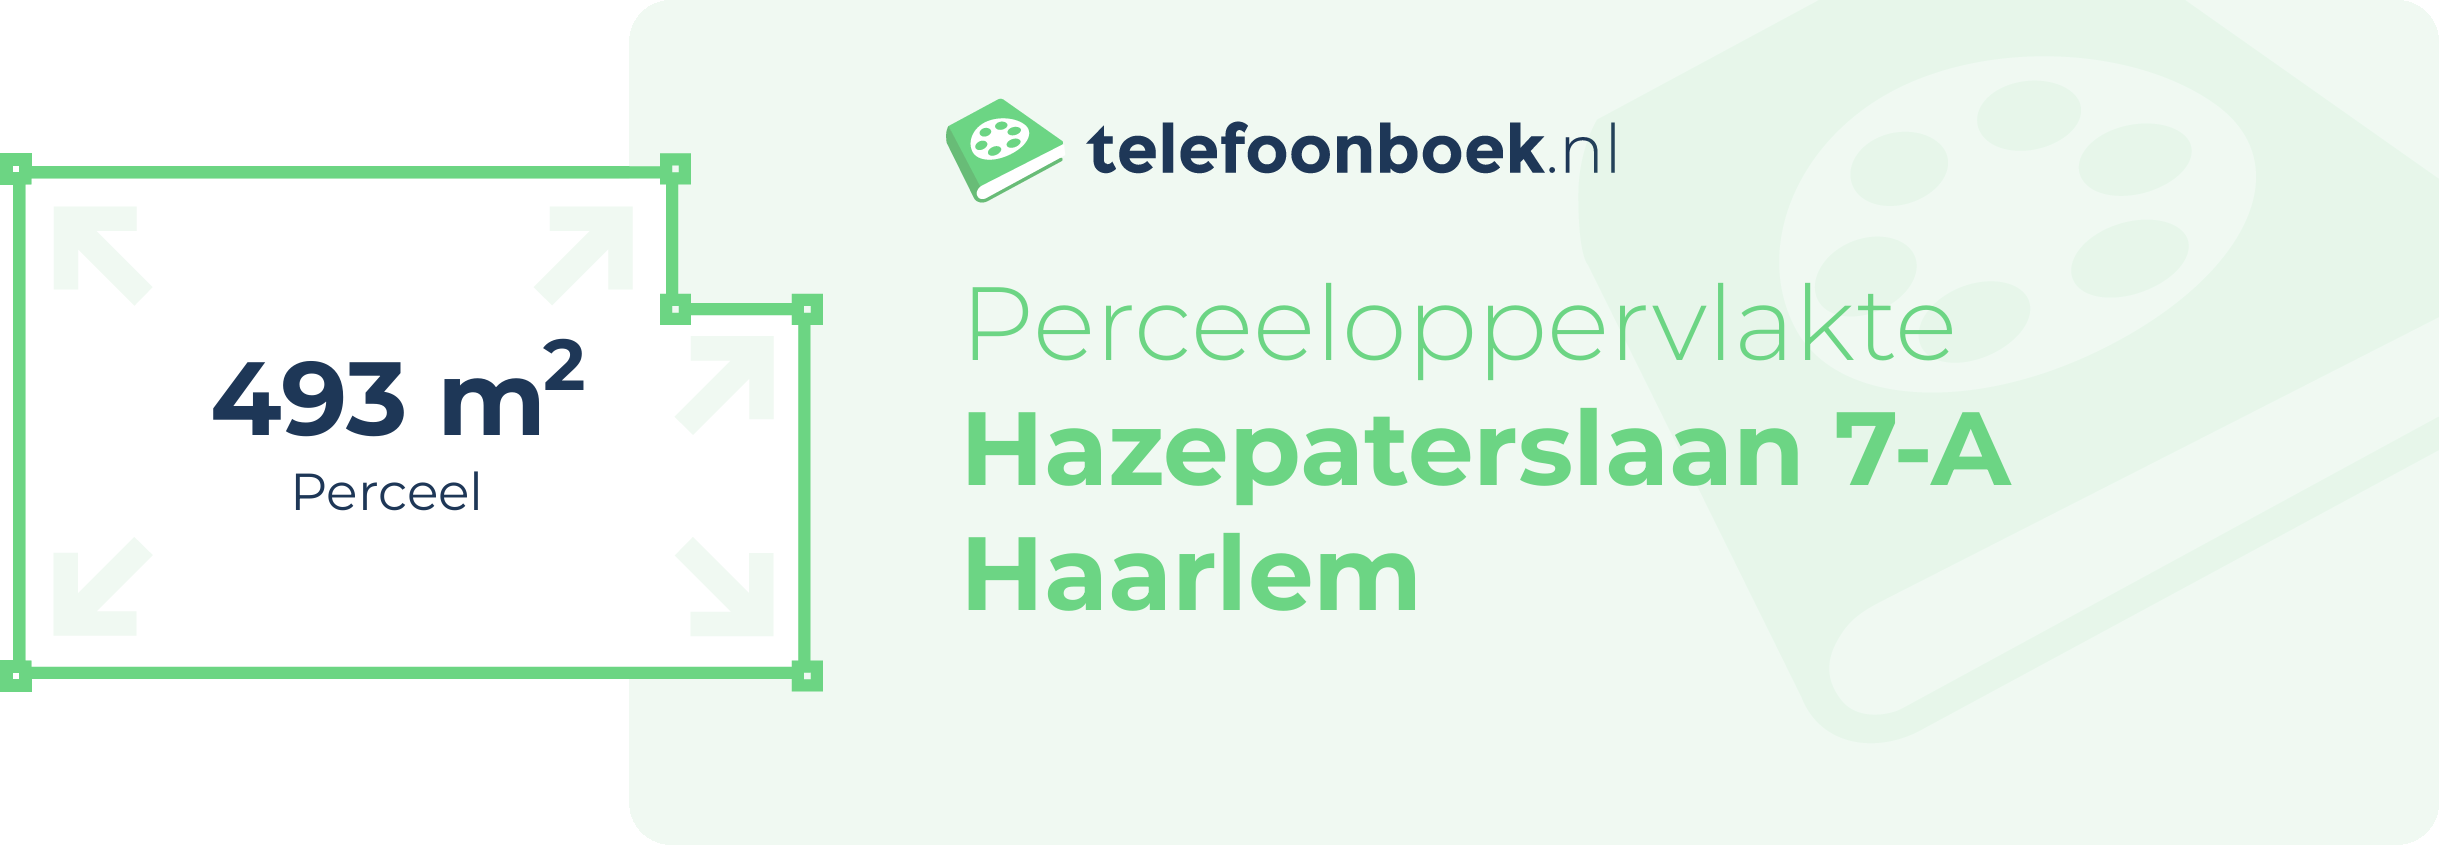 Perceeloppervlakte Hazepaterslaan 7-A Haarlem